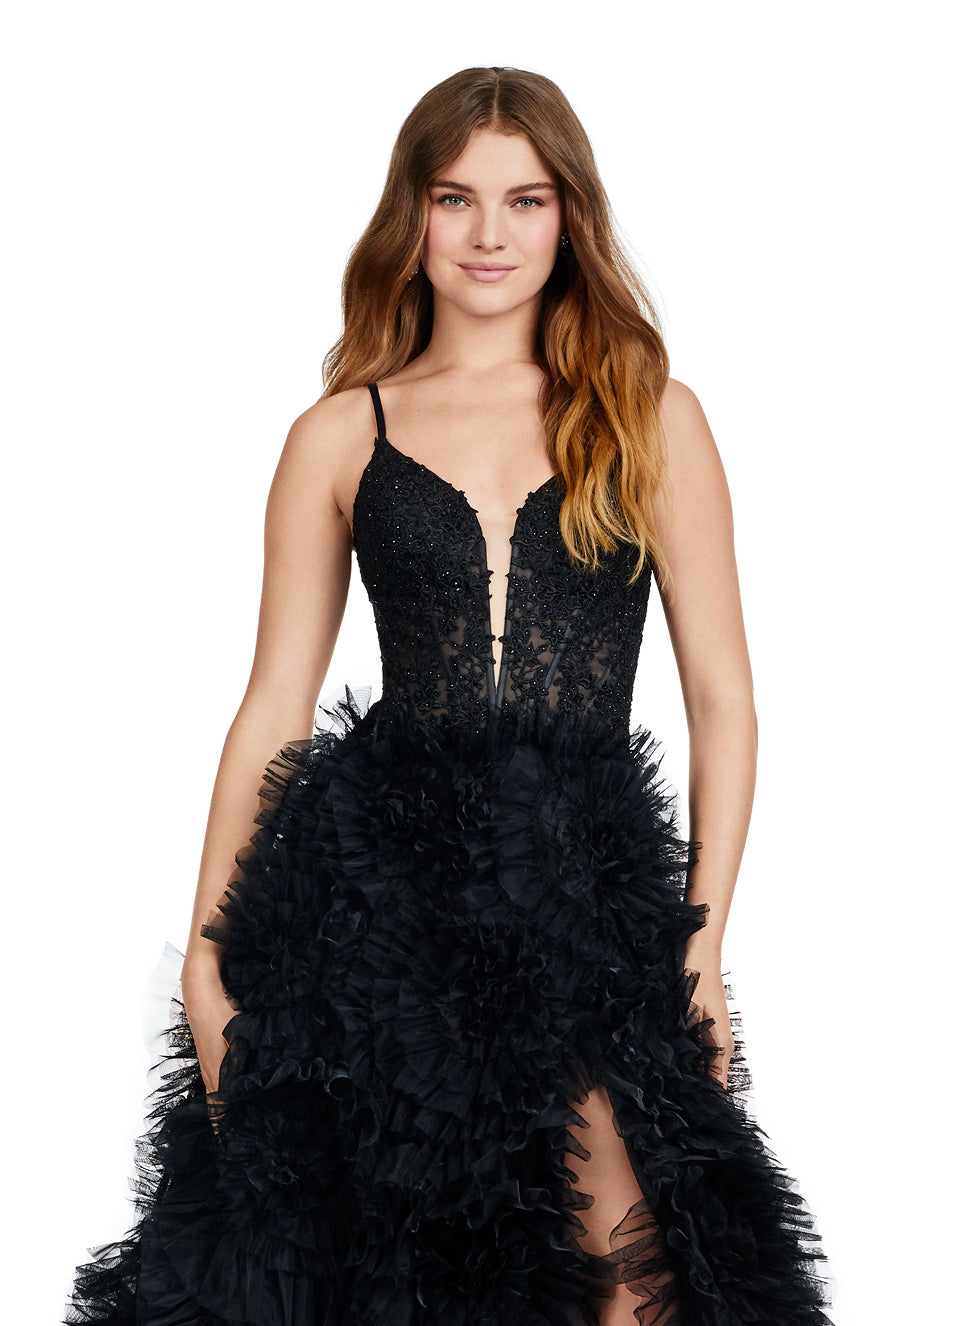 Banette Midi Dress - Deep V Neck Sleeveless Dress in Black | Showpo USA